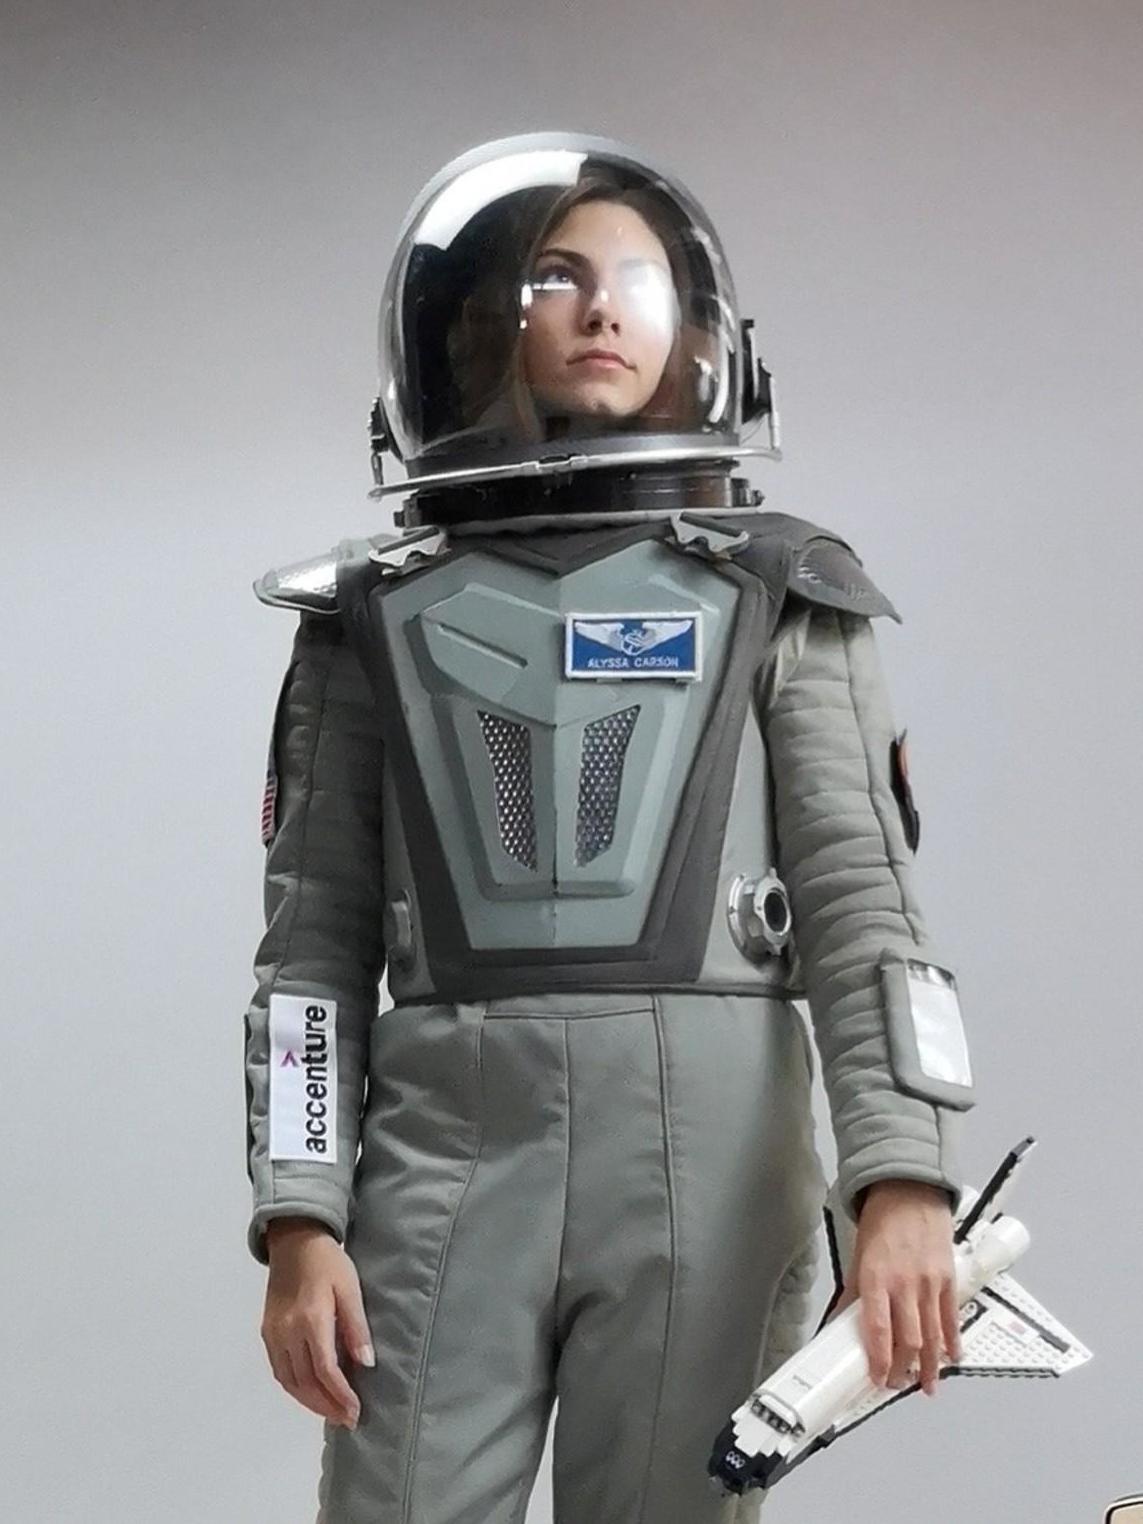 Alyssa Carson wearing space gear